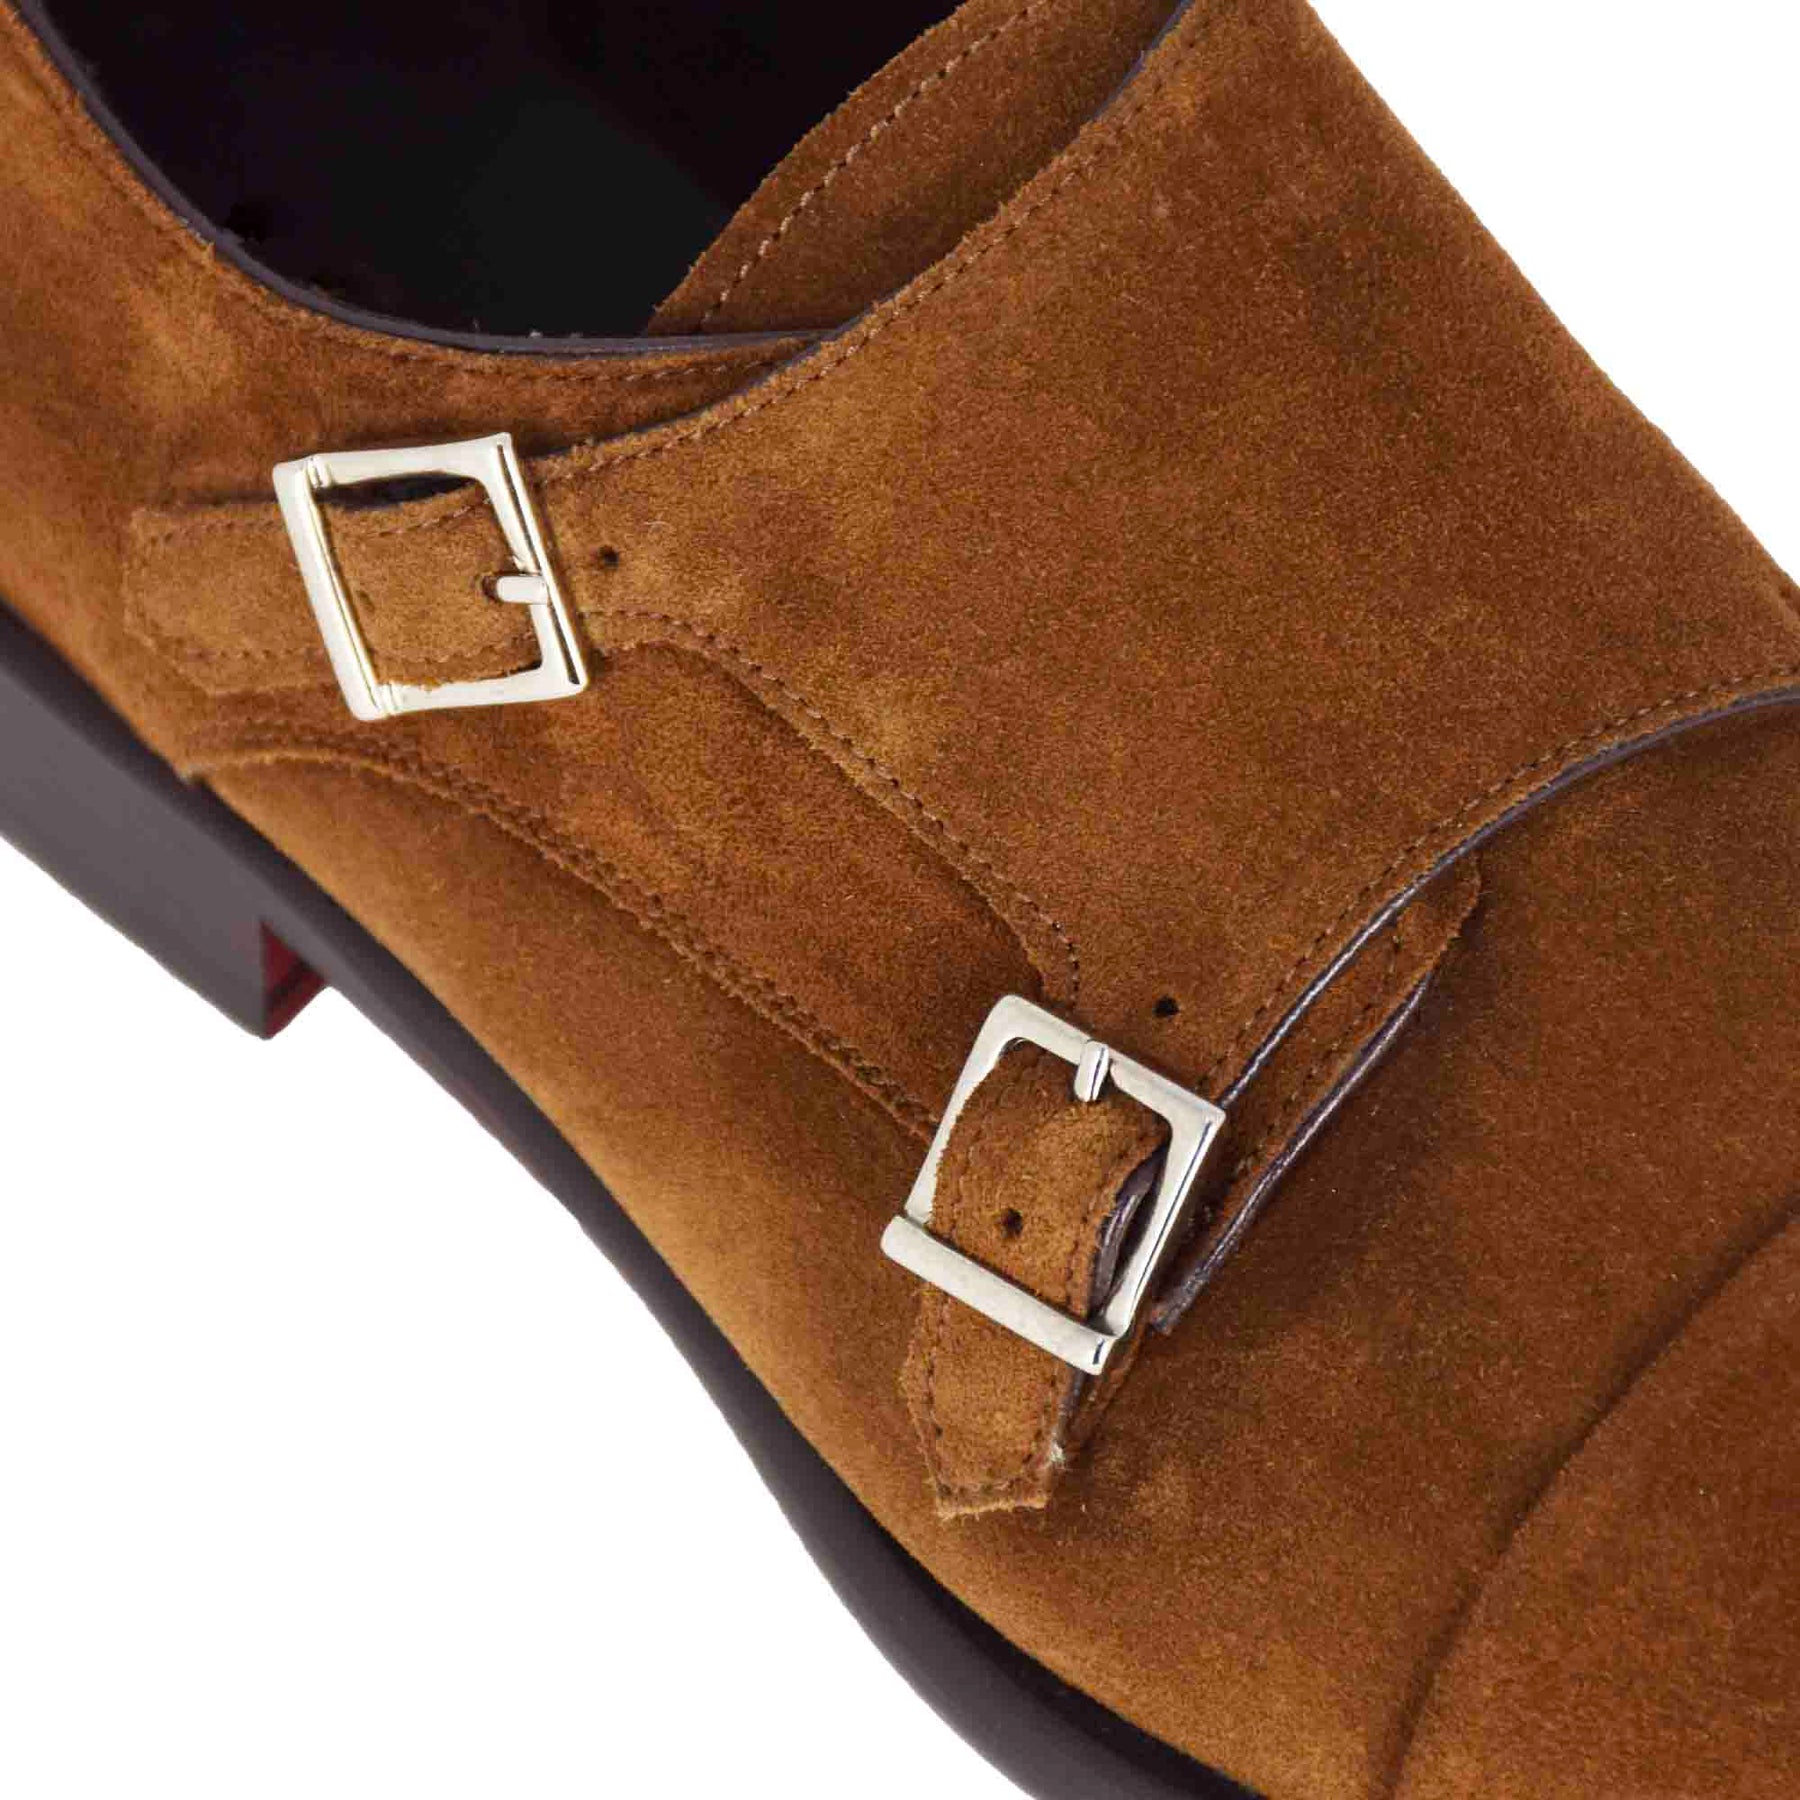 Double buckle men's shoe in light brown suede